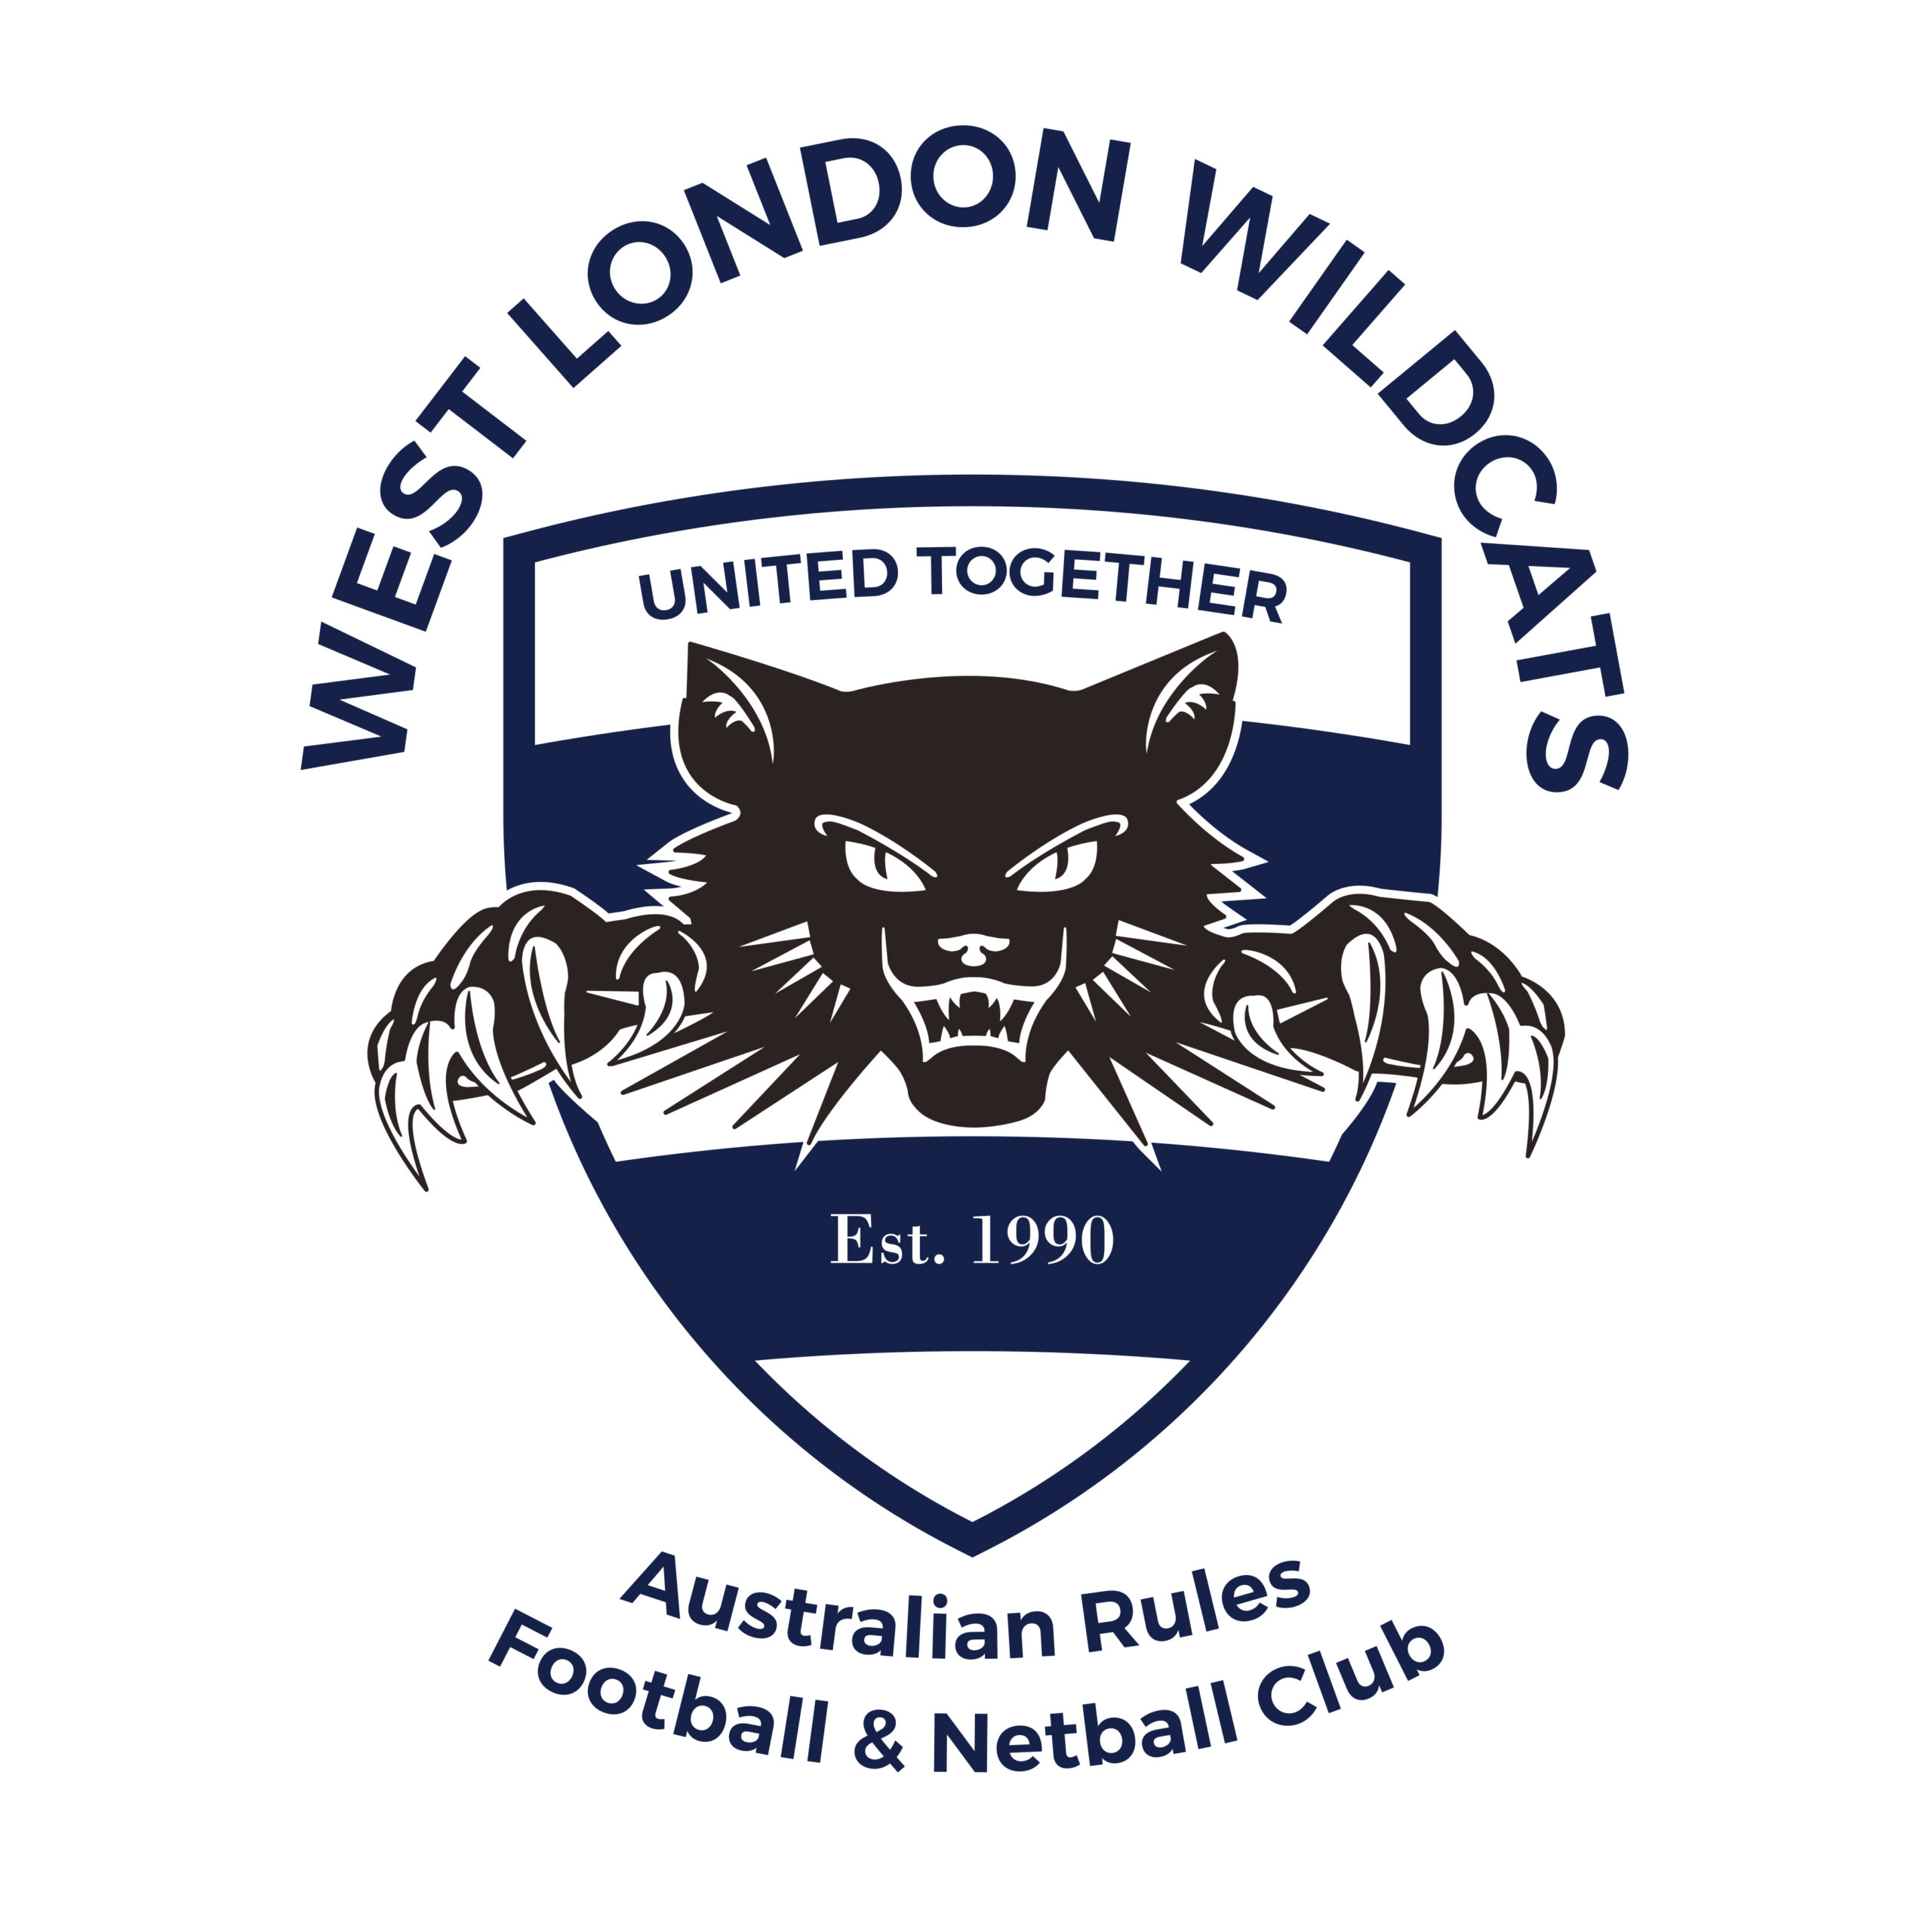 West London Wildcats